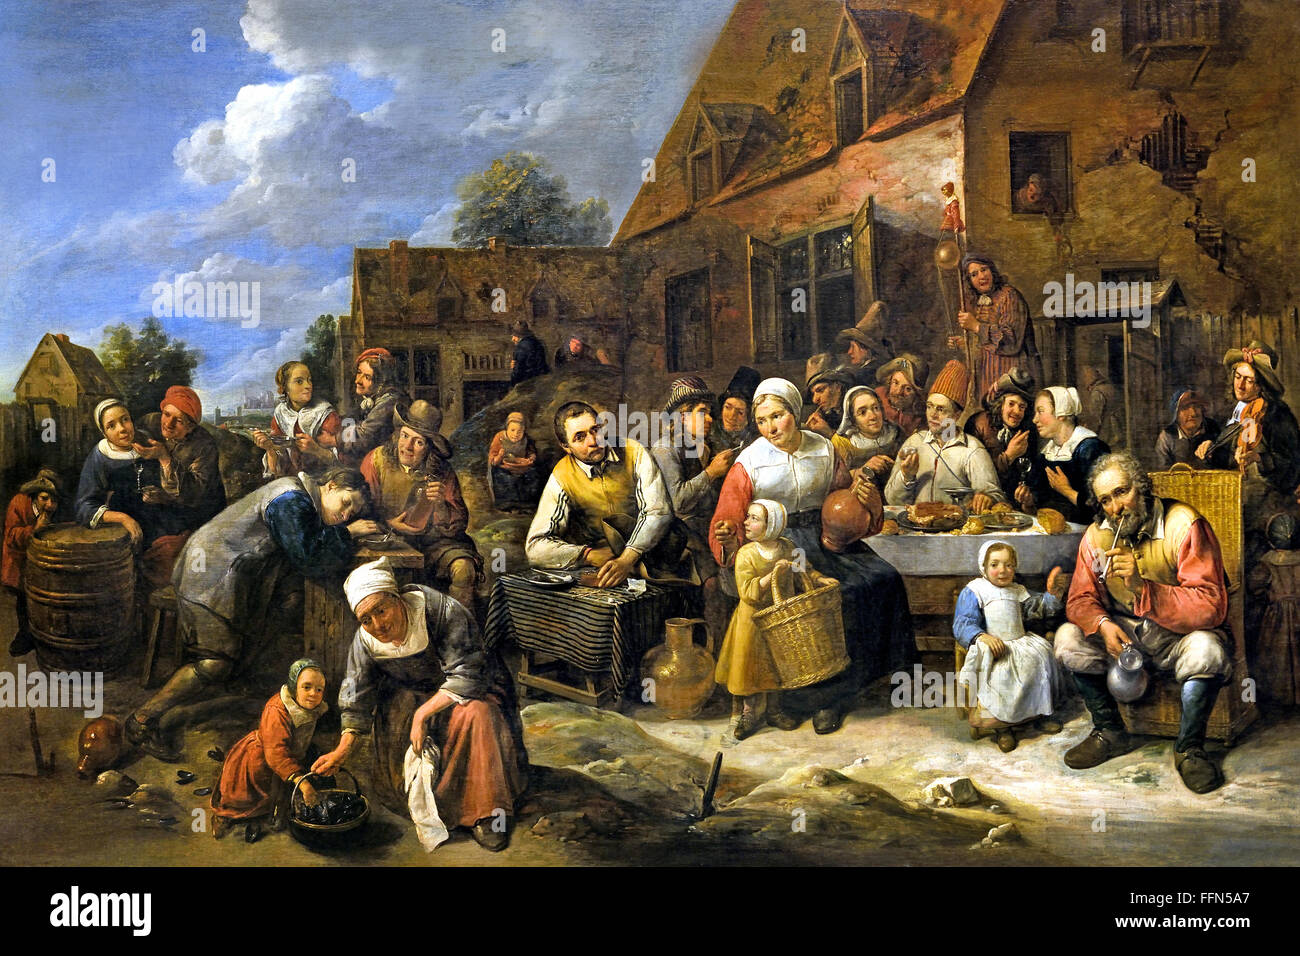 Banquet villageois - banquet villagers by Gillis van Tilborch or Gillis van  Tilborgh 1625 – 1678 Flemish painter Stock Photo - Alamy